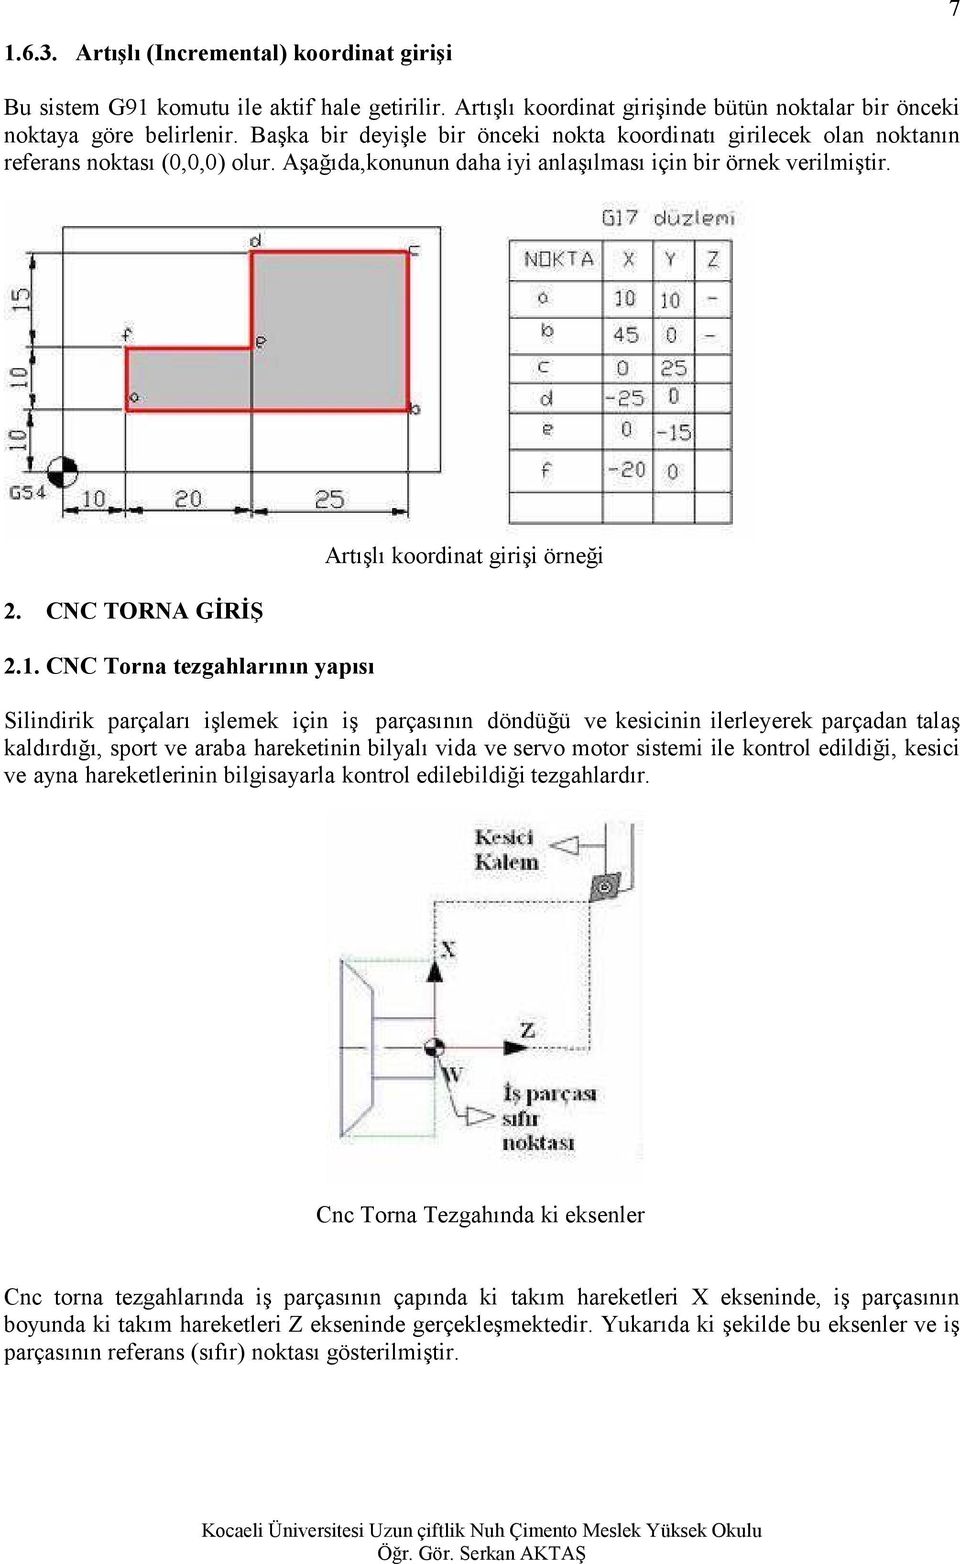 CNC TORNA GİRİŞ 2.1.